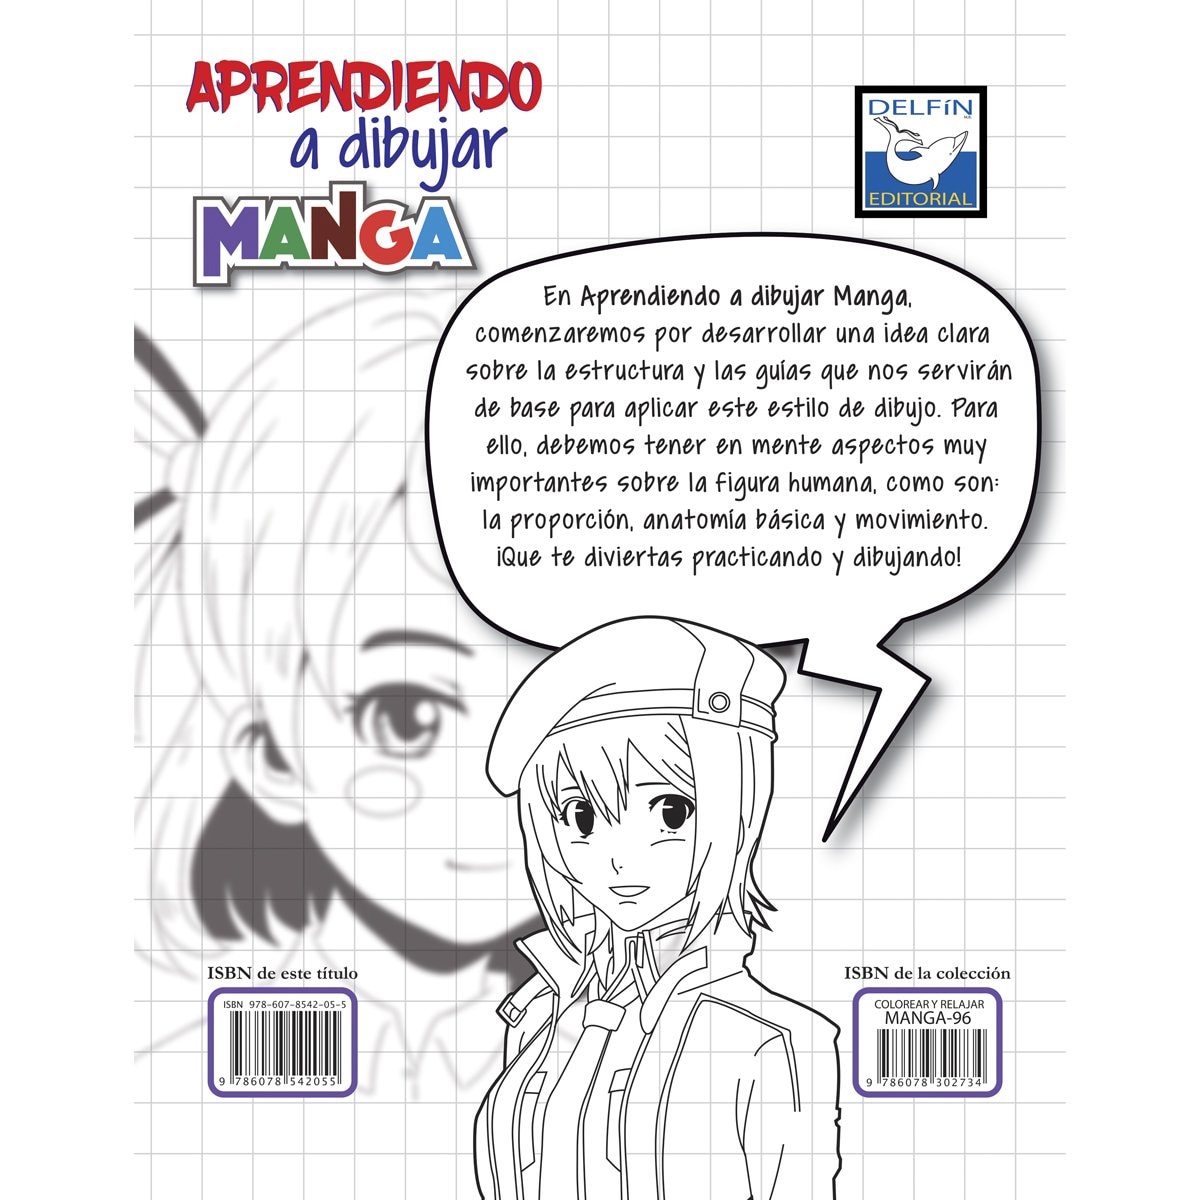 Taller de Manga - Dibujar una página Manga paso a paso